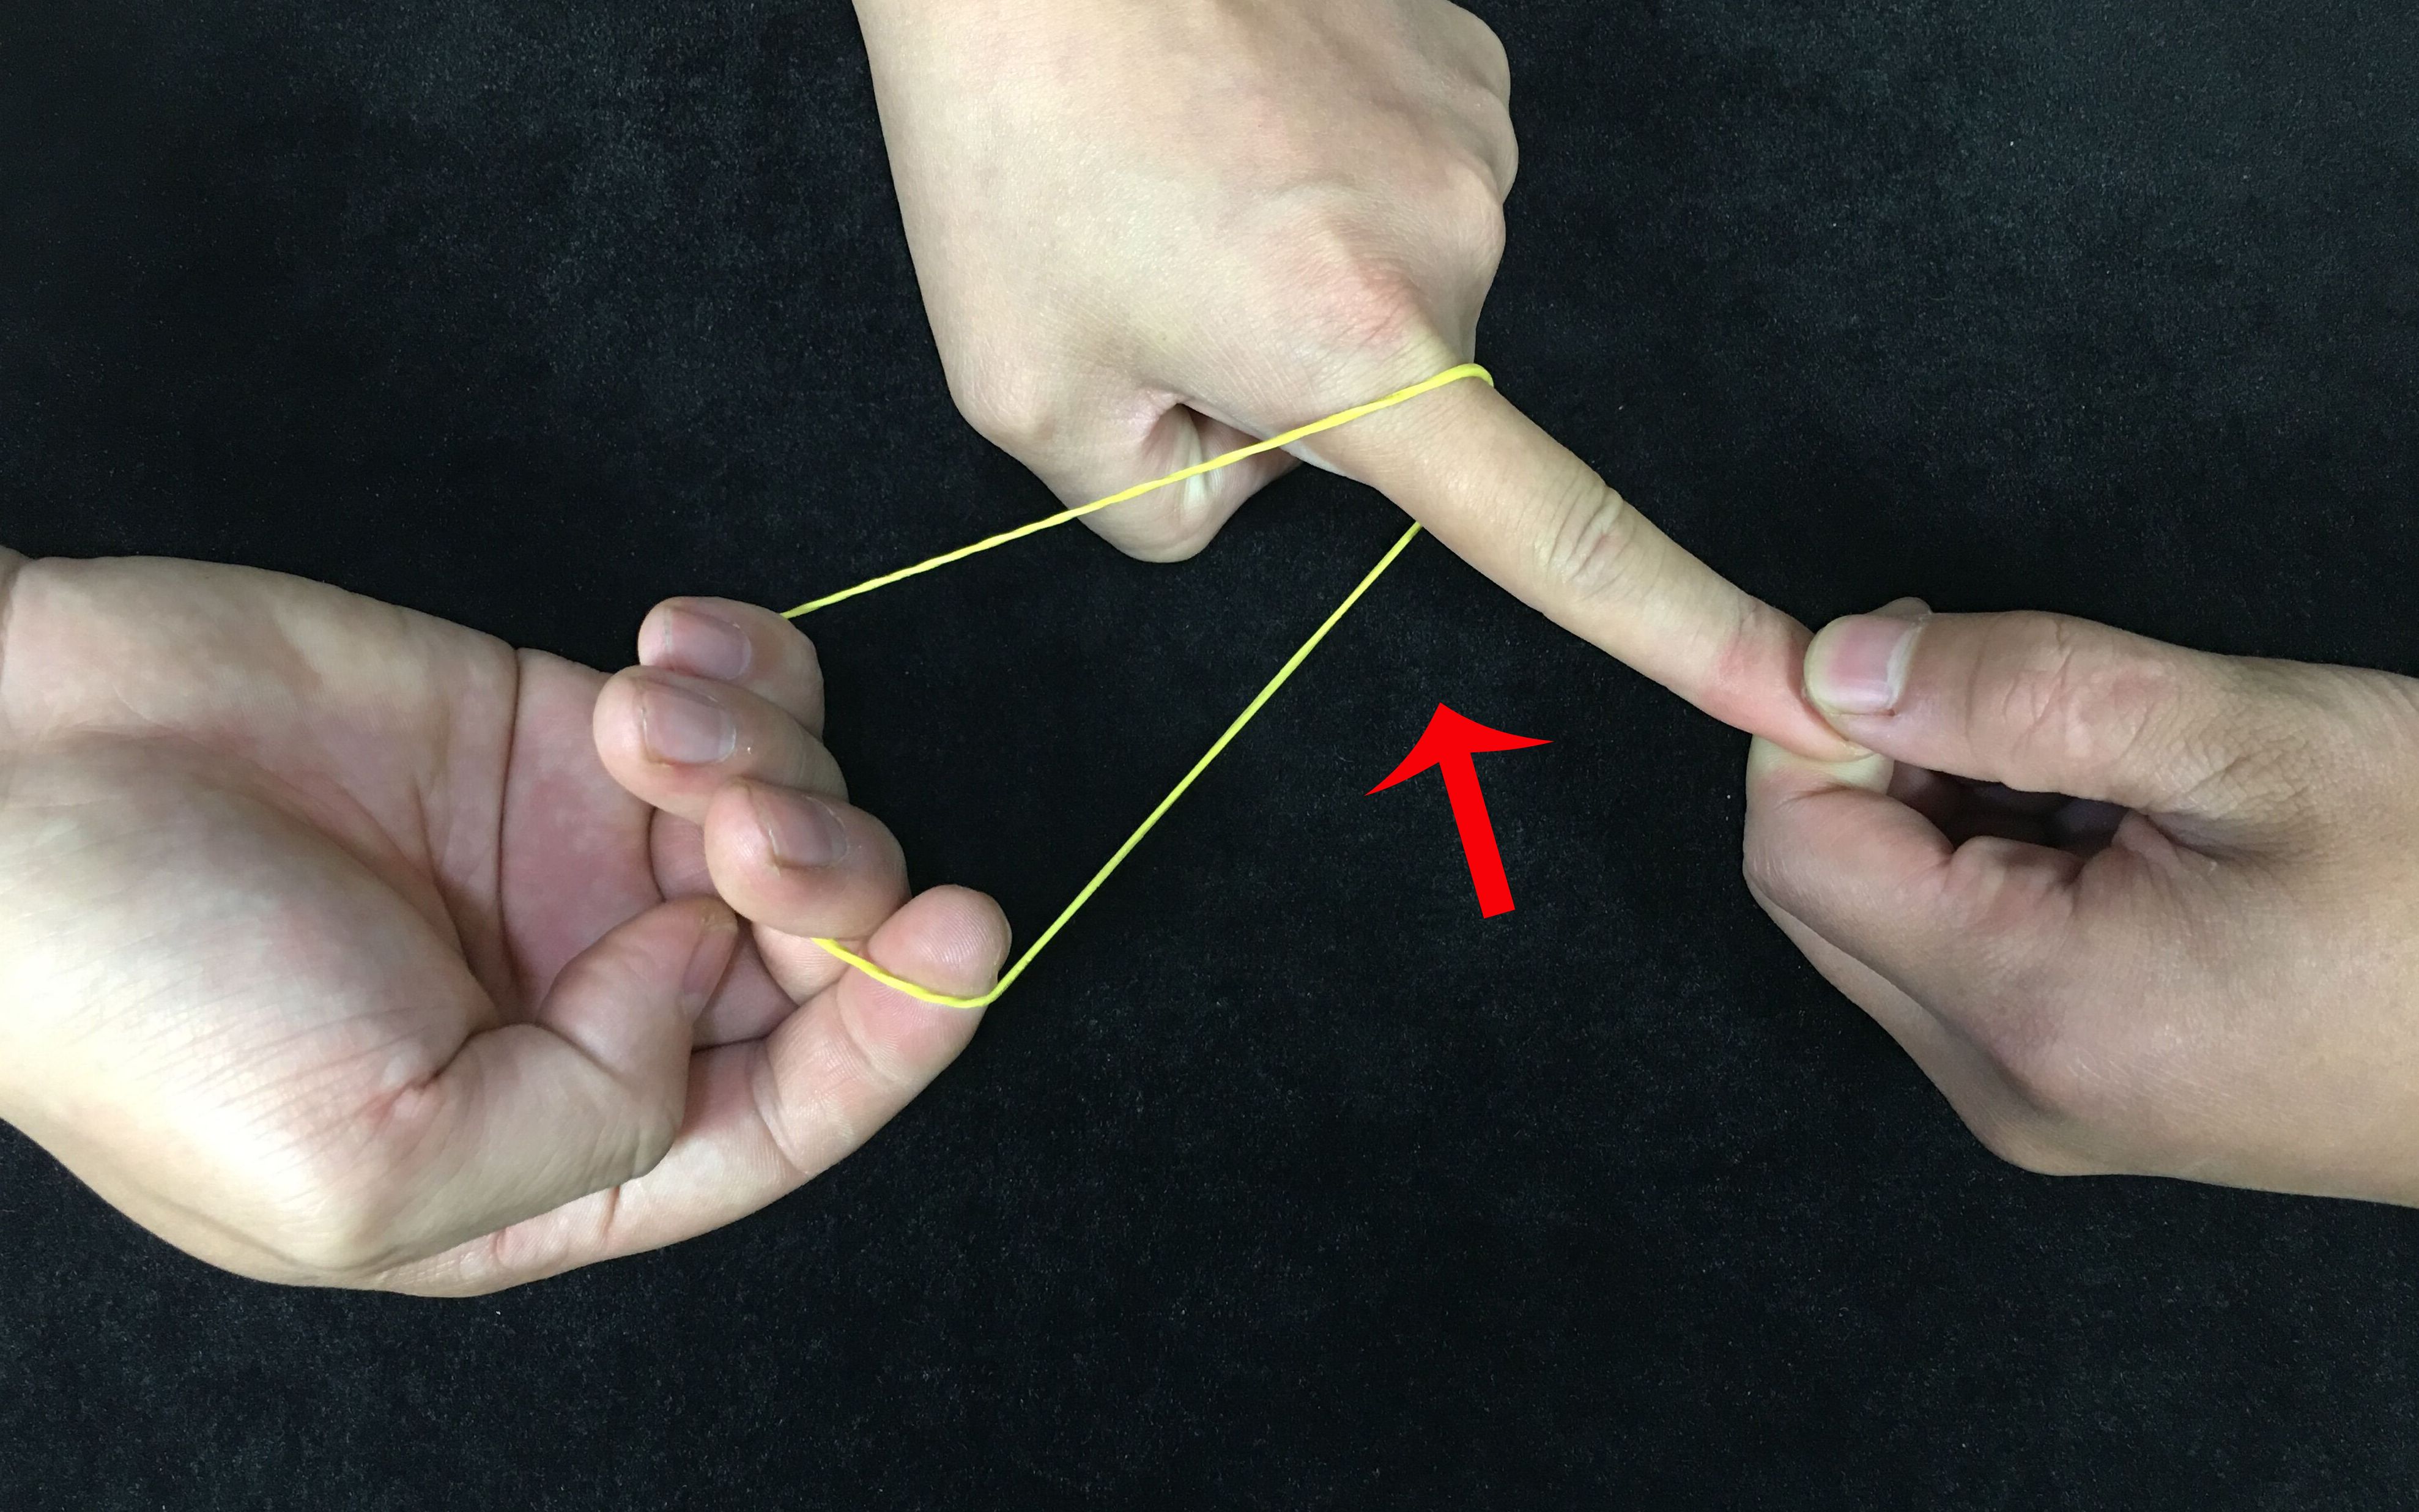 魔术揭秘:橡皮筋直接穿越手指,皮筋却完好无损?